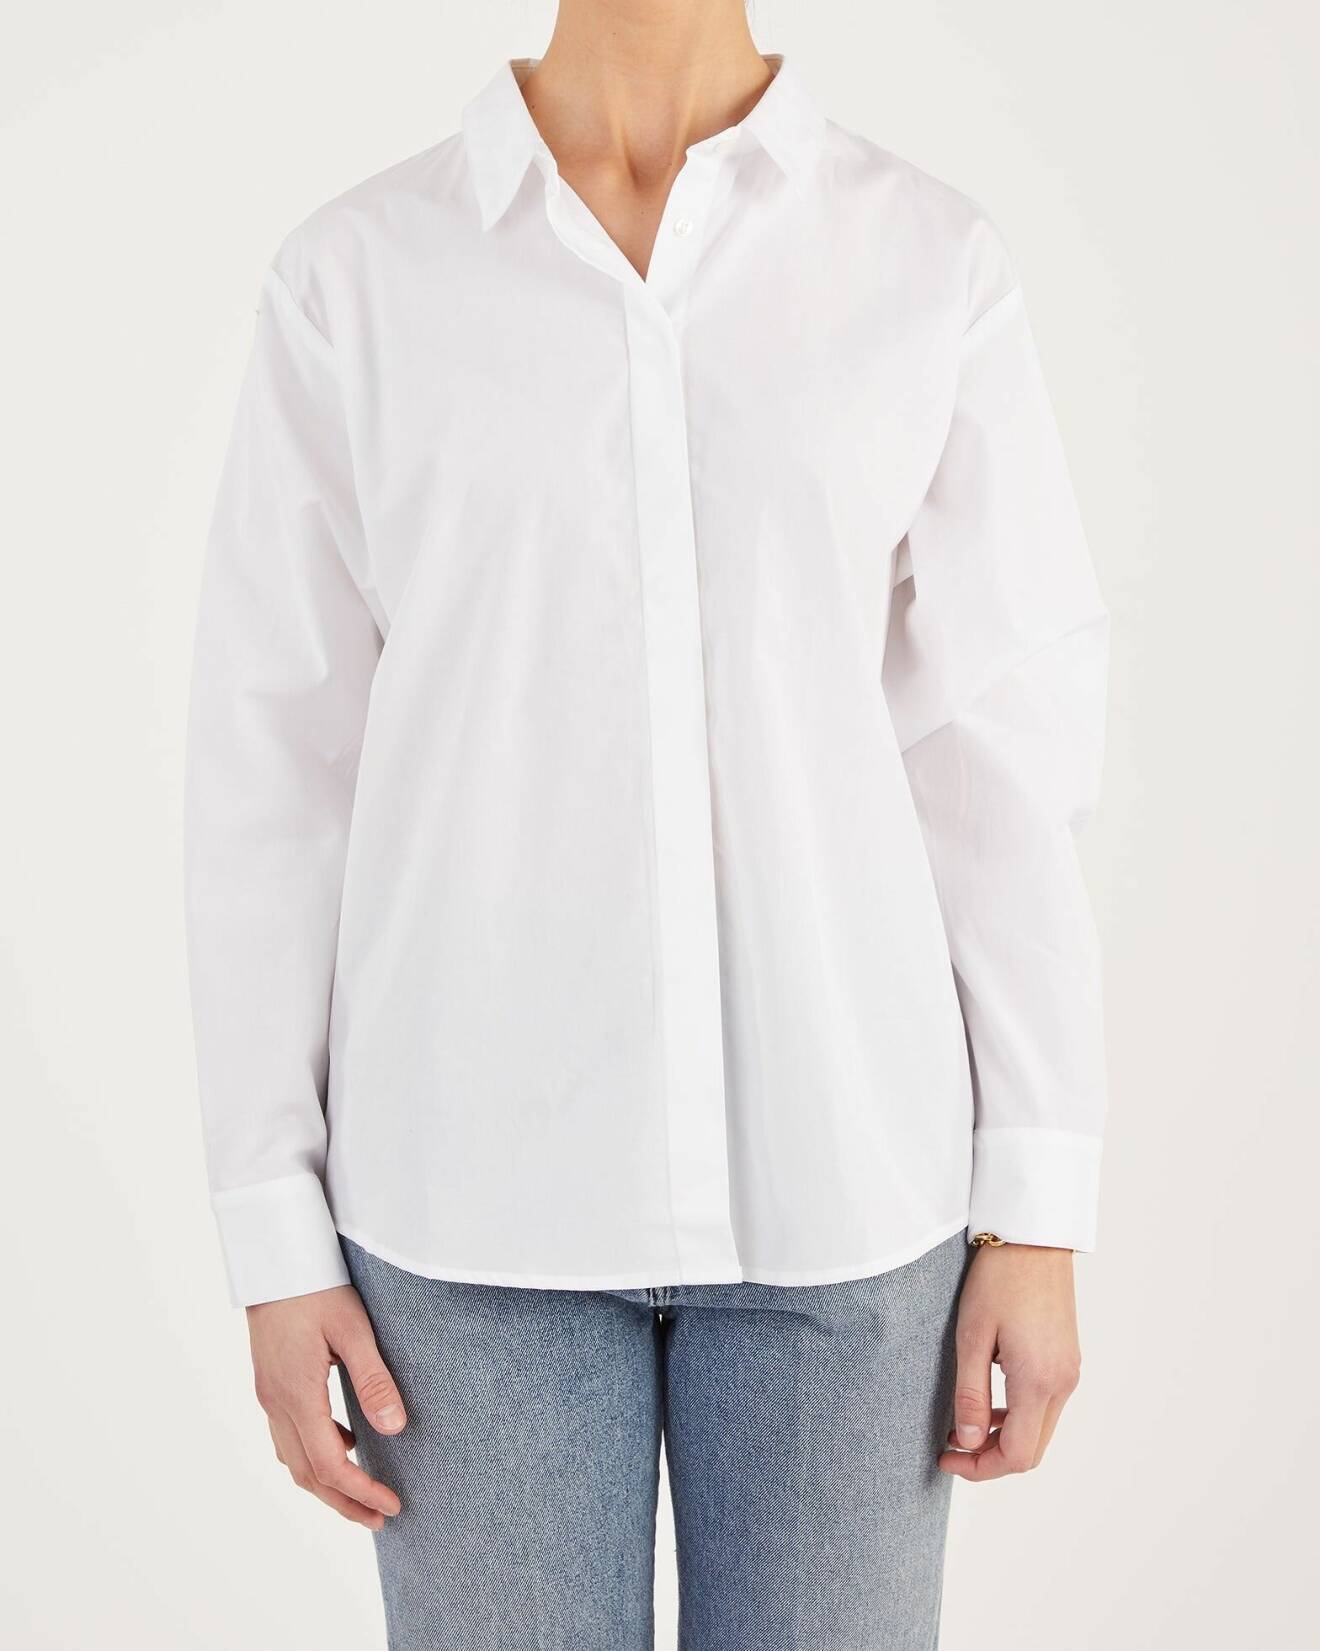 skjorta i vit nyans med boxig passform och dold knäppning från Stylein